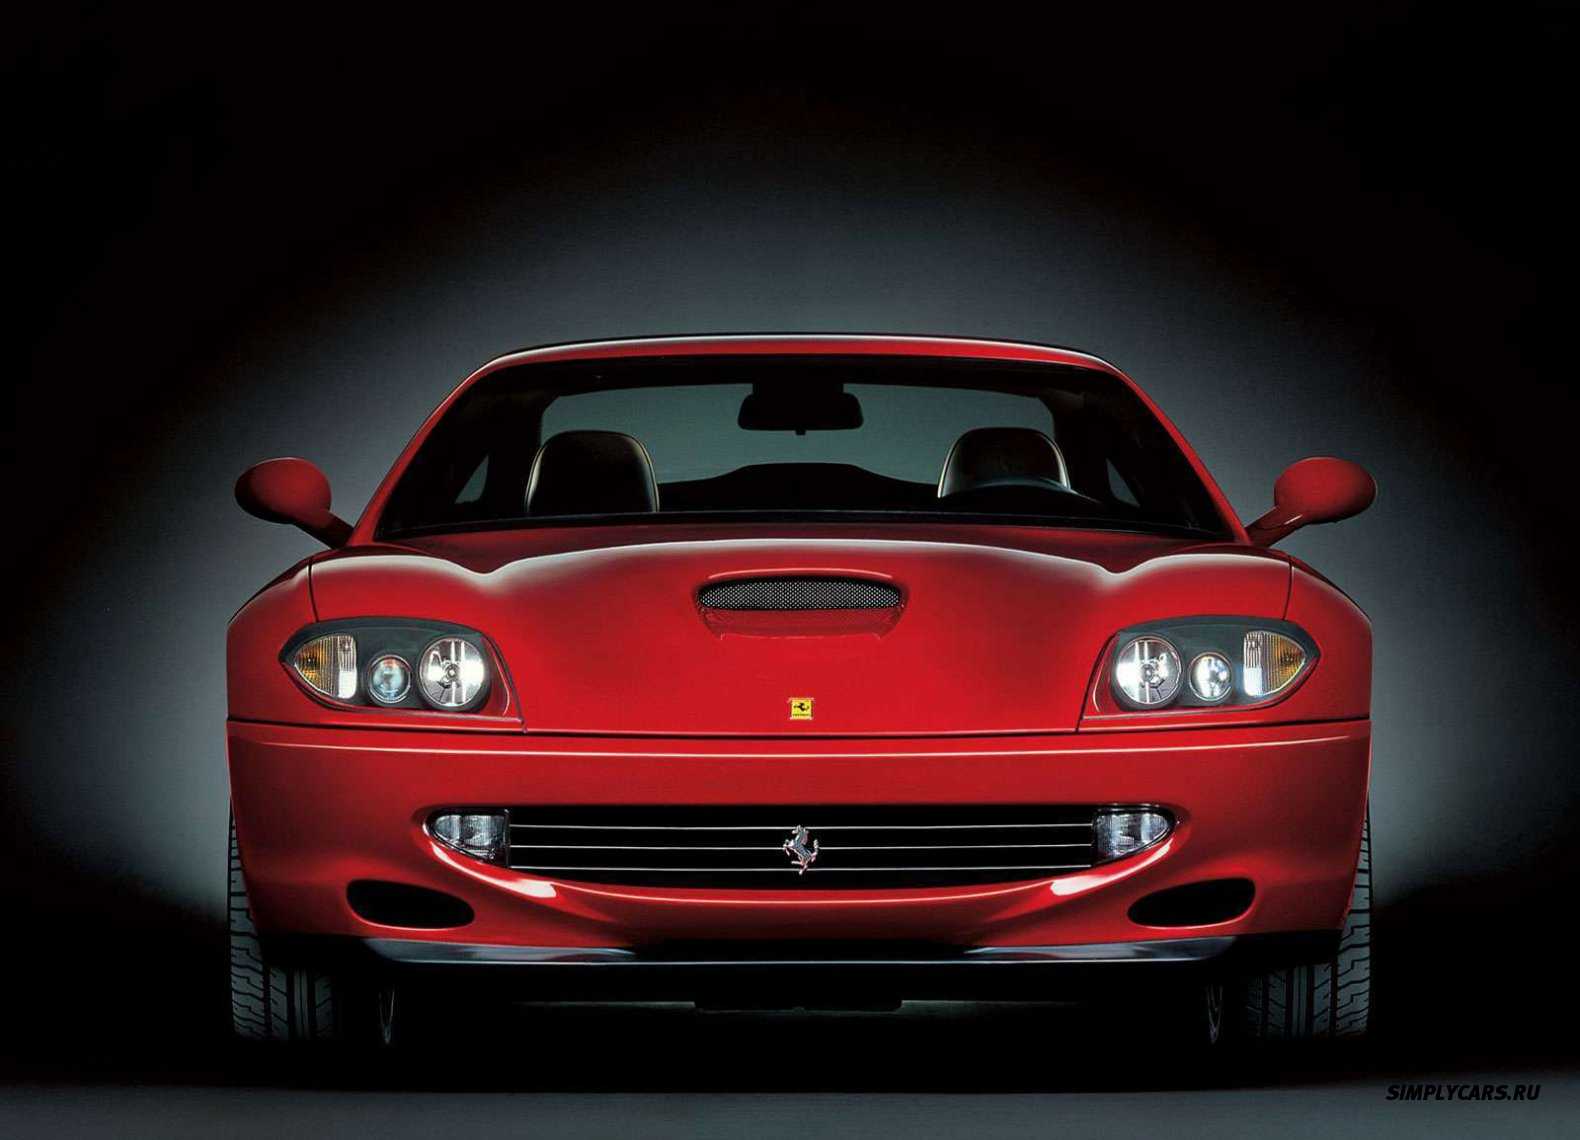 На автосалоне в Париже 2000 дебютировал открытый вариант Ferrari 550 Barchetta Pininfarina, построенный на базе купе Феррари 550 Маранелло, который был